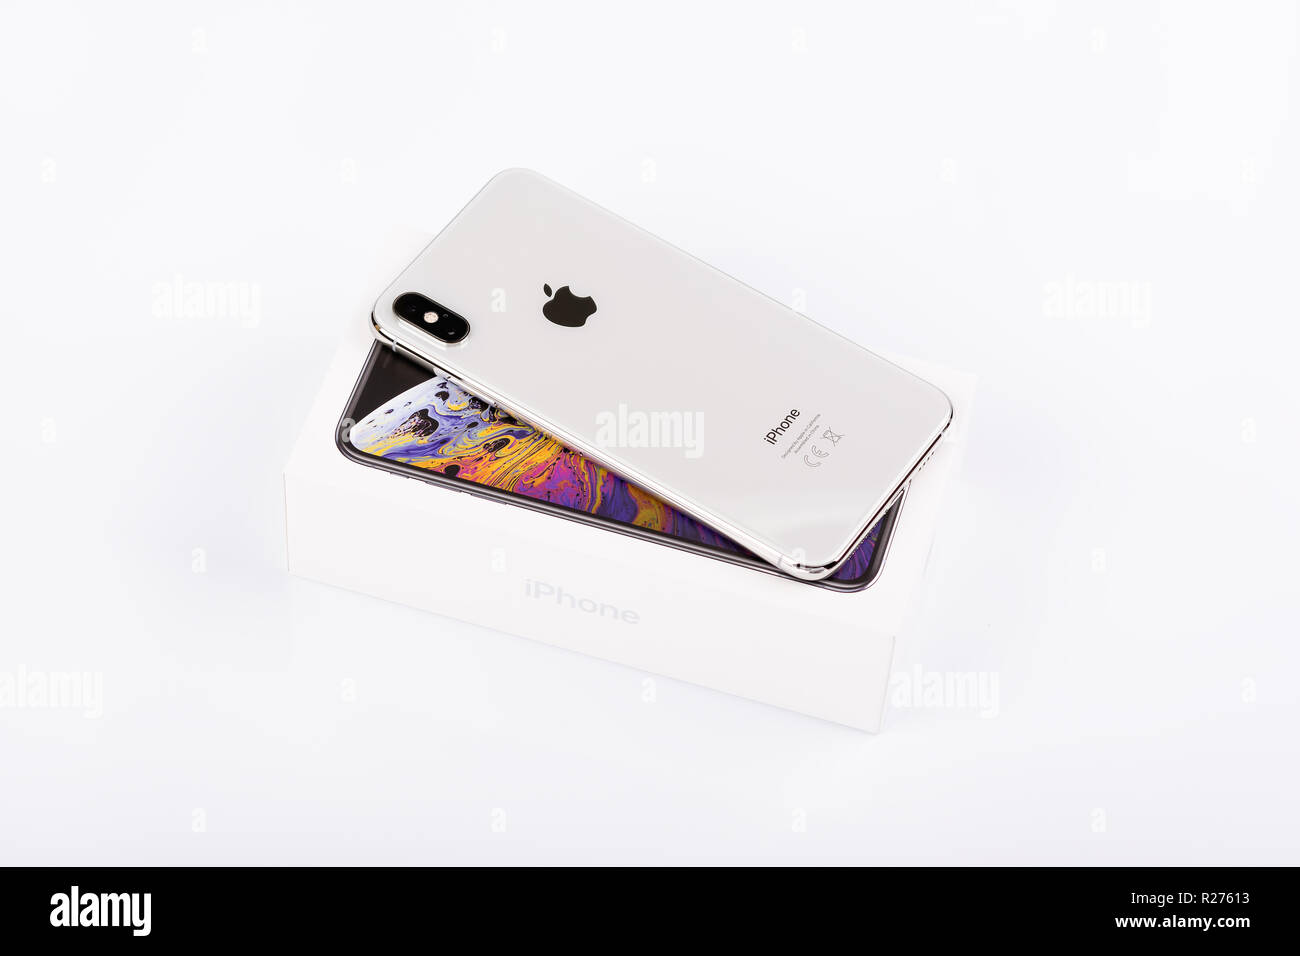 BURGAS, Bulgarien - 8. NOVEMBER 2018: Apple iPhone Xs Max silber auf weißem Hintergrund, Ansicht von hinten. Stockfoto